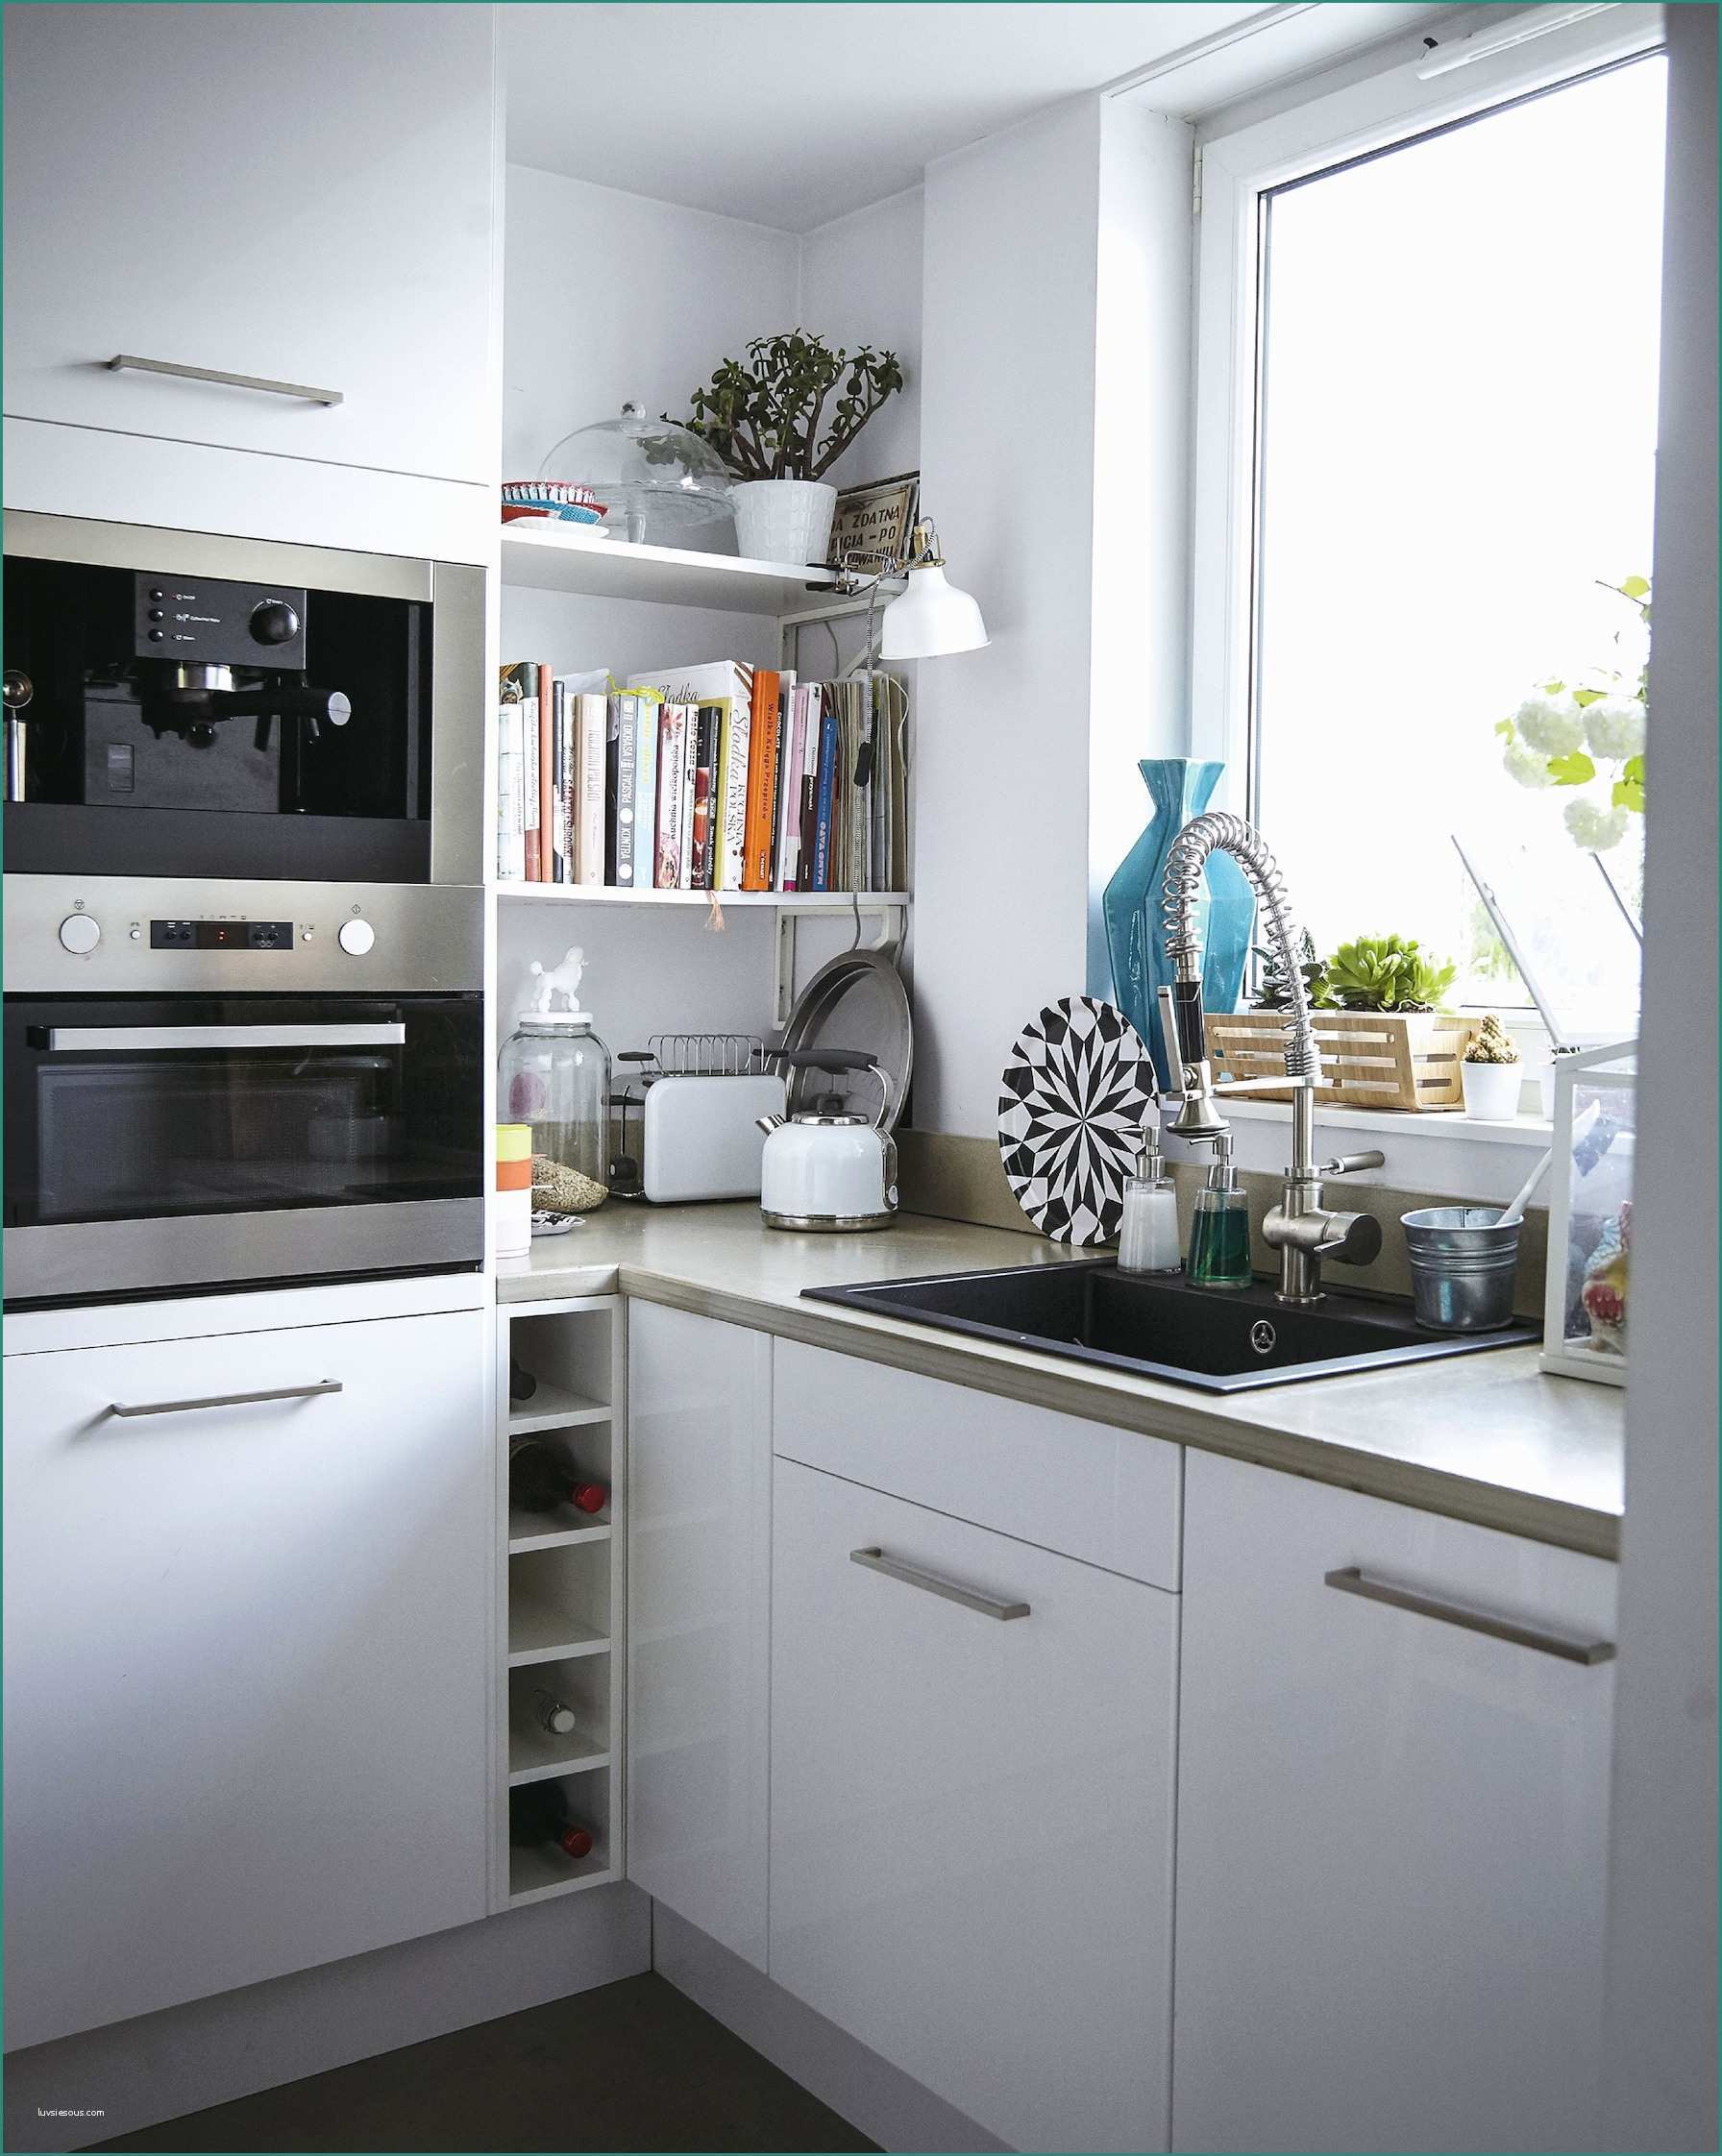 Lavello Cucina Leroy Merlin E Cucina Con isola Ikea Bello Ikea Cucine Su Misura Design Per La Casa